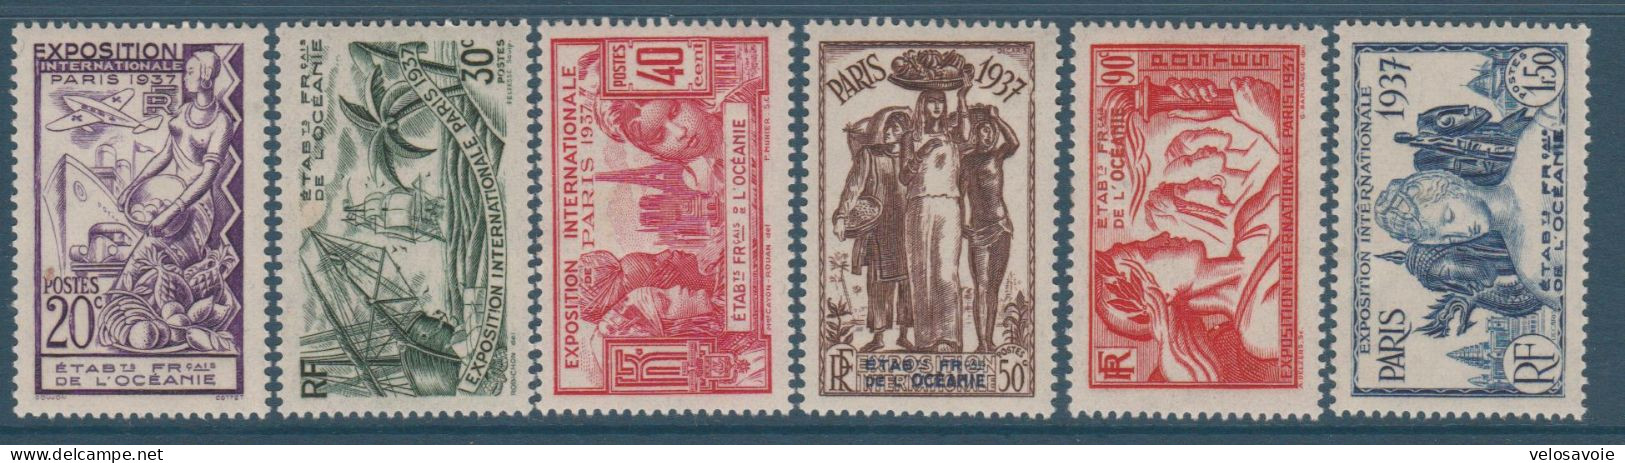 OCEANIE N° 121/126 EXPO DE 1937 * - Unused Stamps